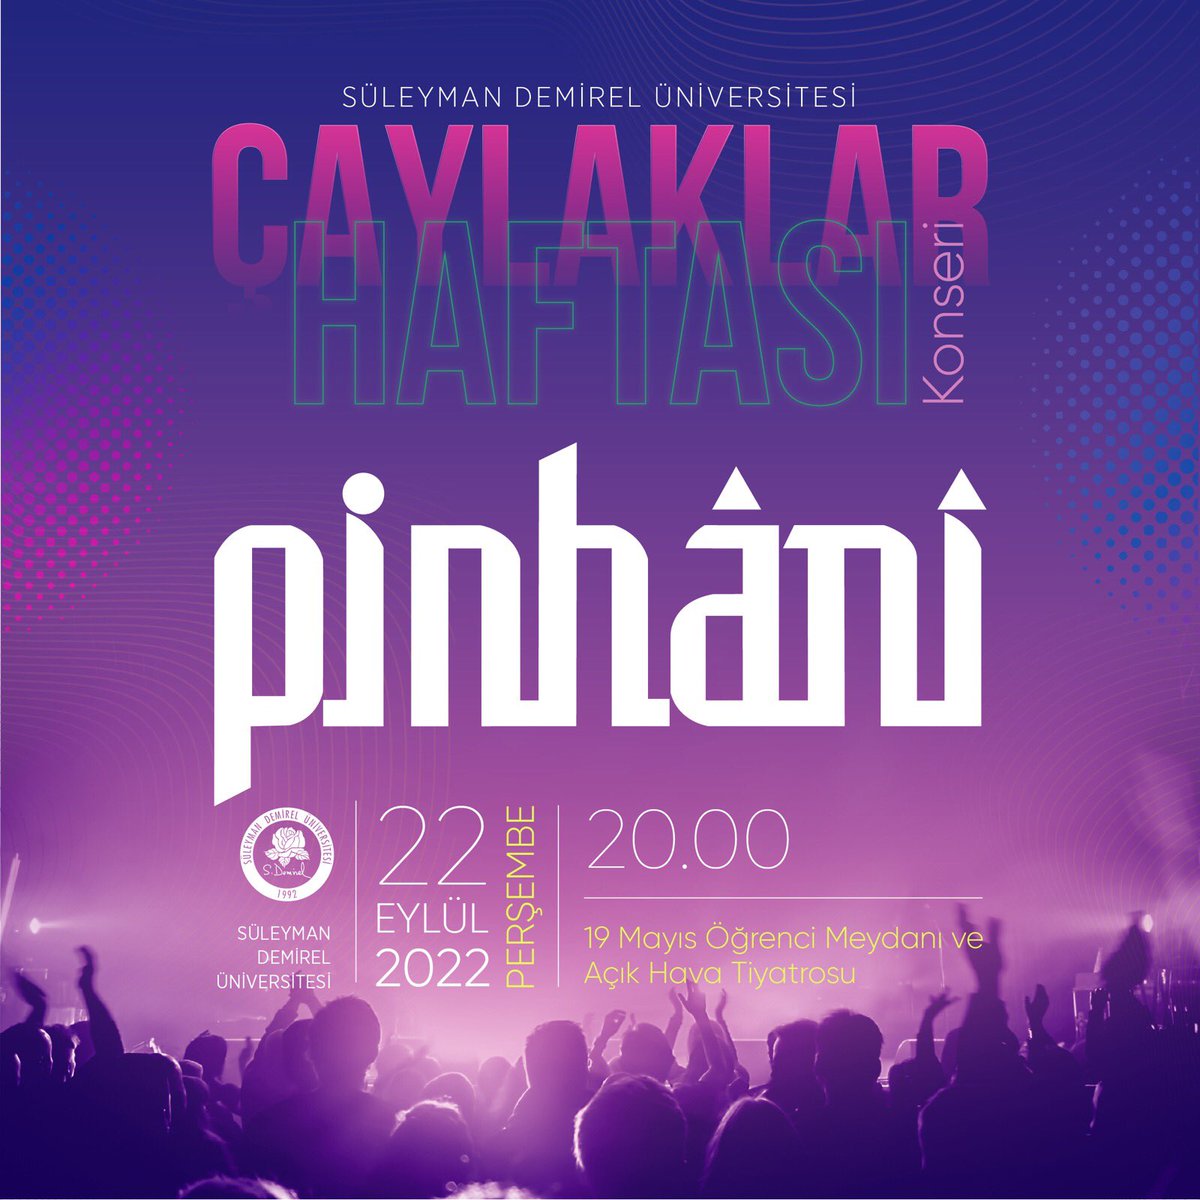 Yeni döneme Pinhani ile “Merhaba” diyoruz 🎶 Çaylaklar Konseri, 22 Eylül Perşembe günü saat 20.00’de 19 Mayıs Açık Hava Tiyatrosu ve Öğrenci Meydanında gerçekleştirilecek. @PinhaniTakip